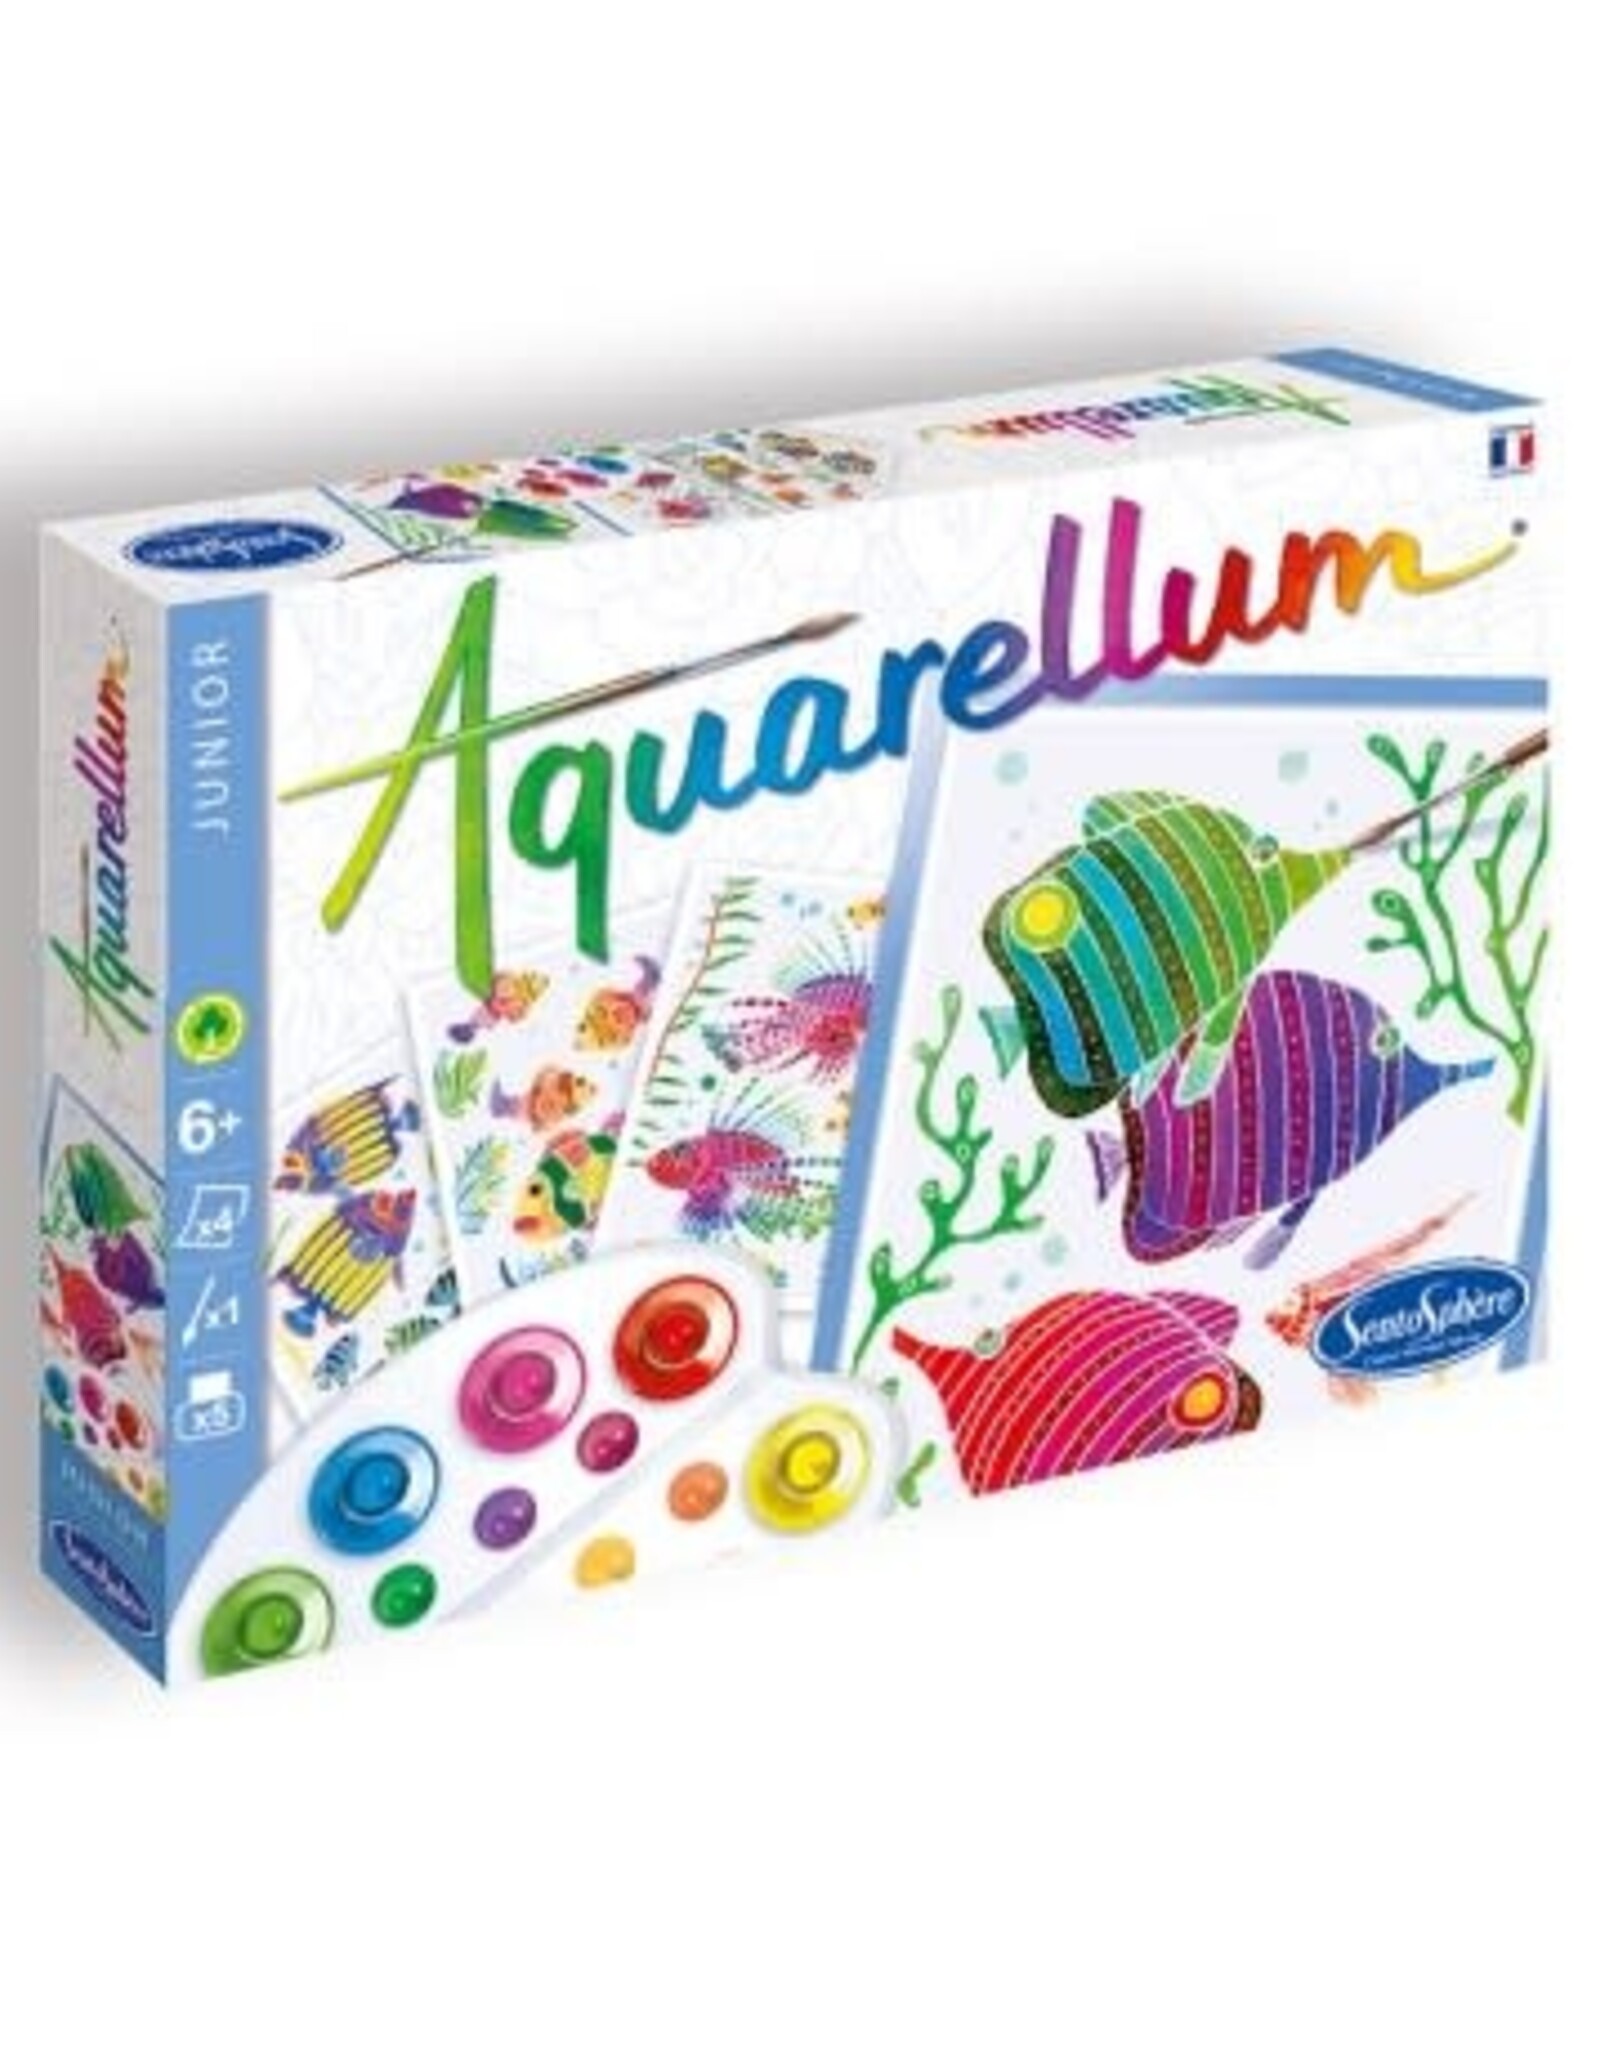 Sentosphere Aquarellum Aquarium Jr